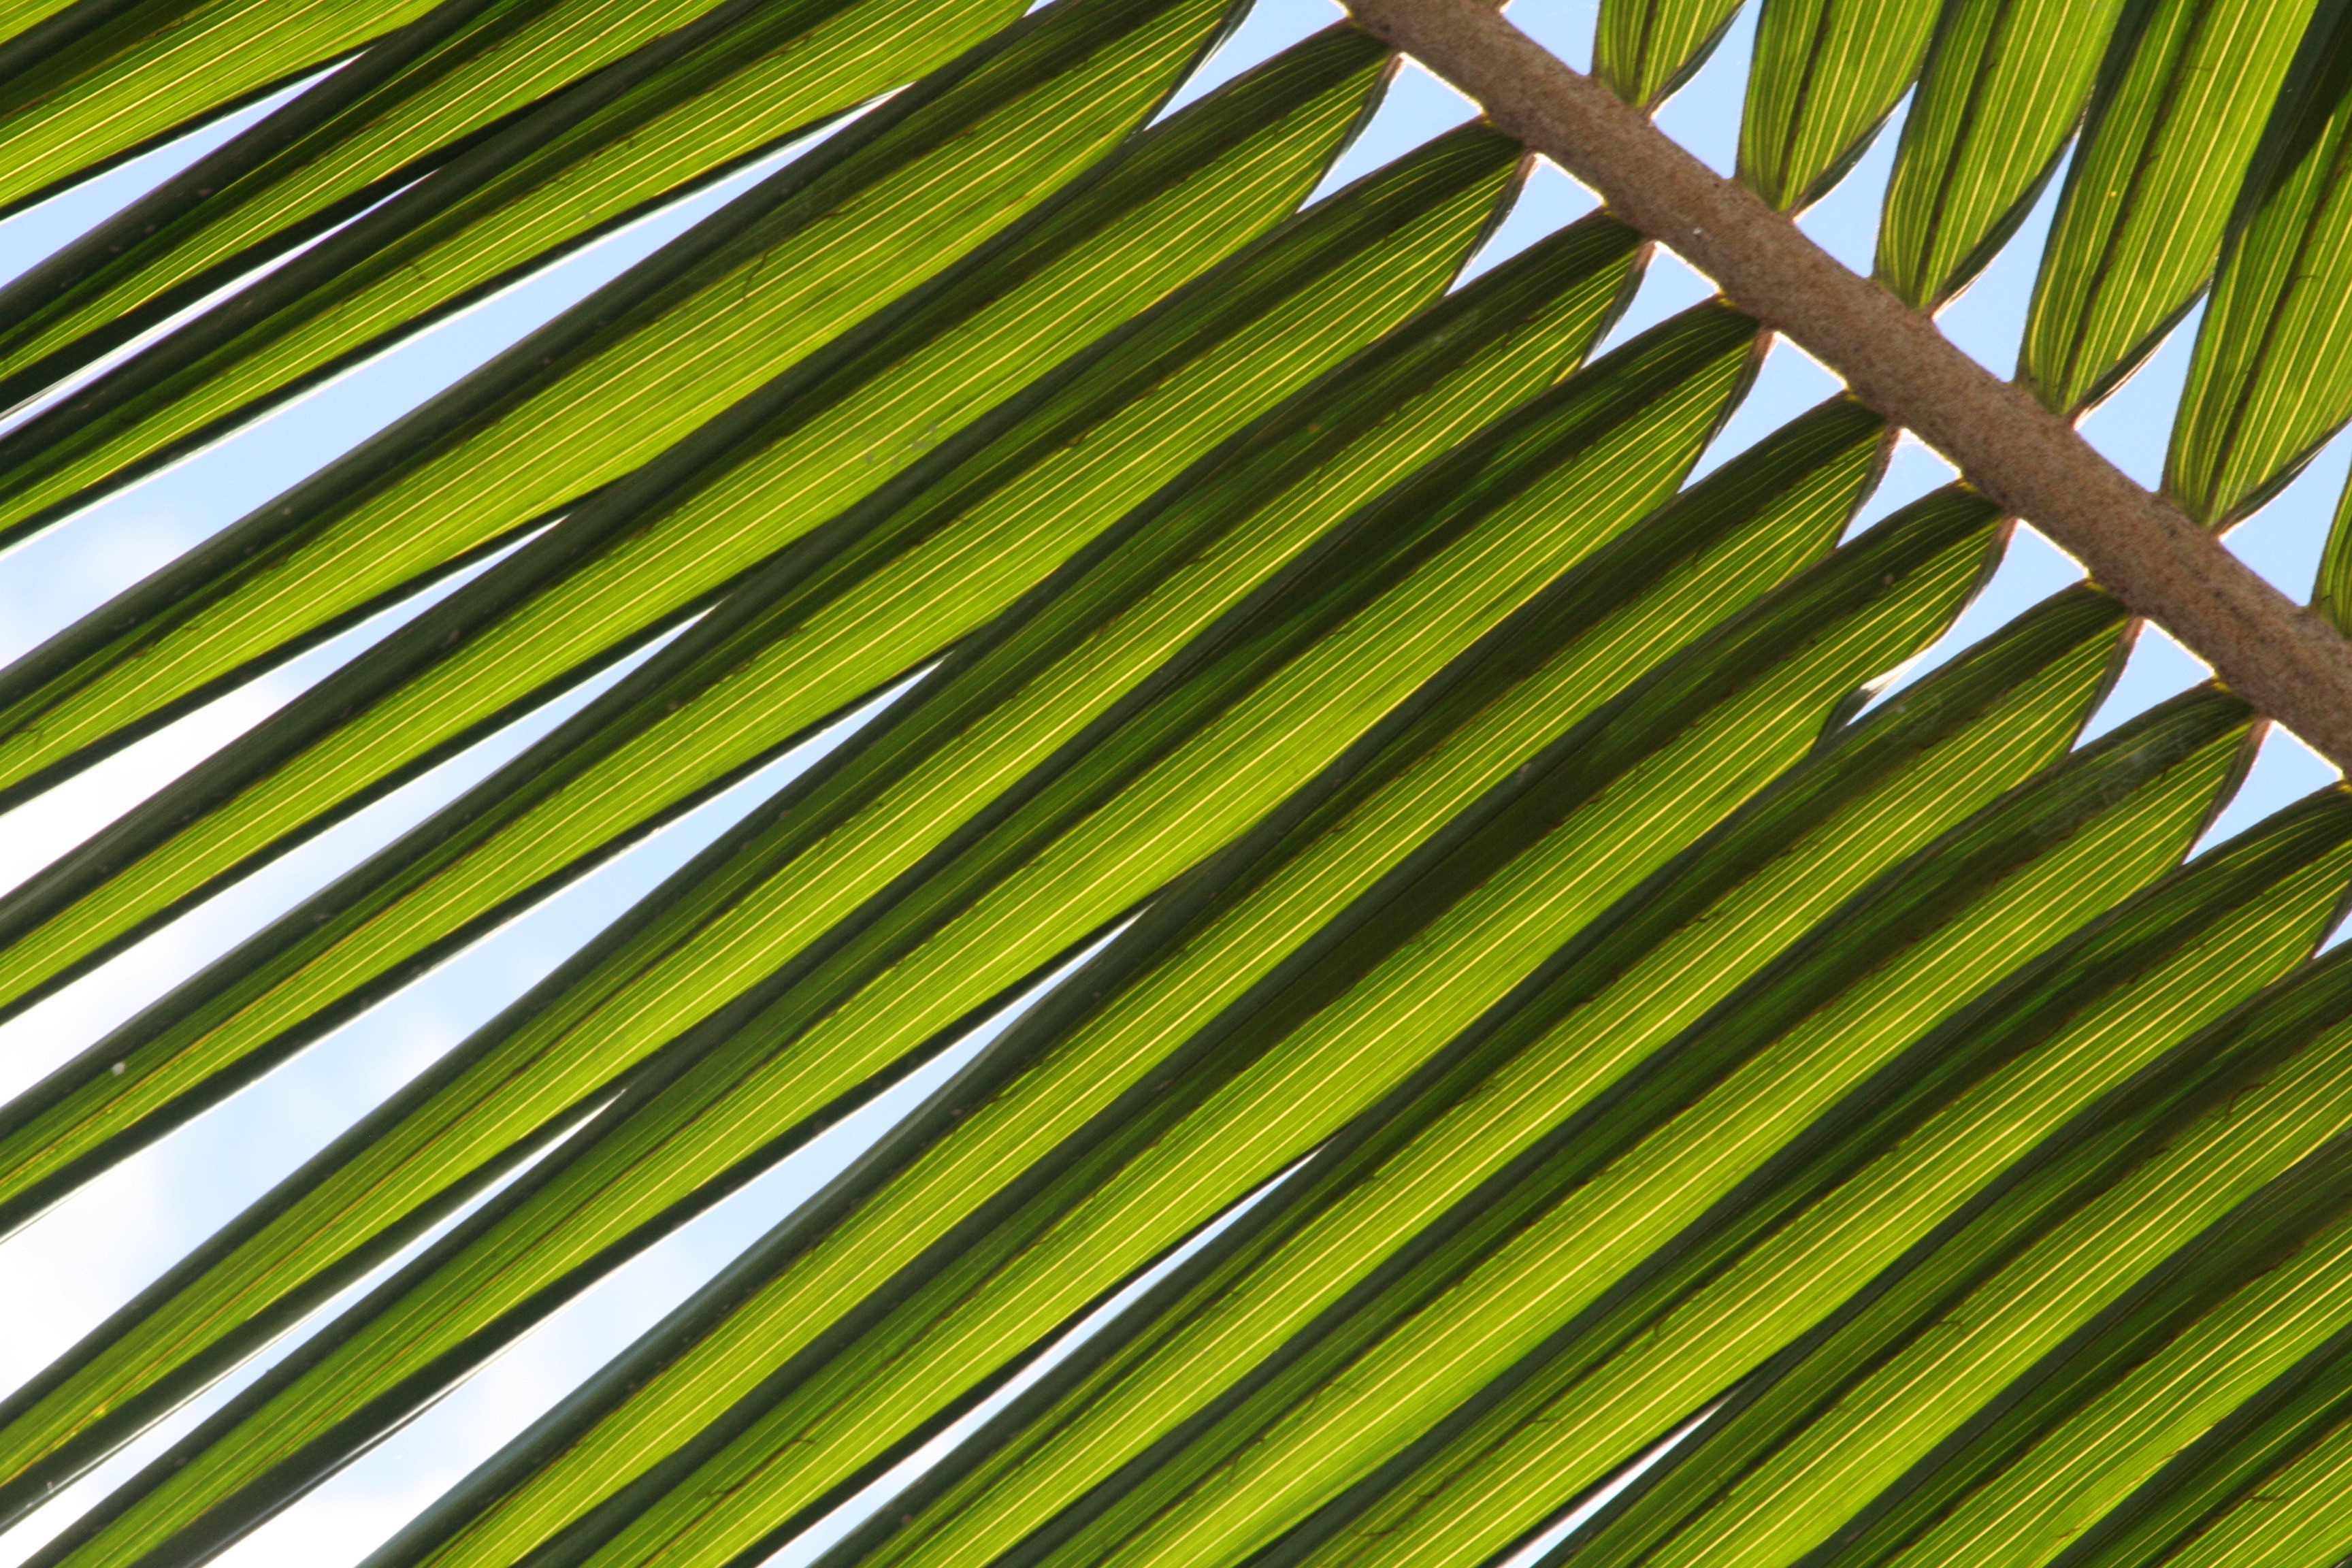 Ростниковидные (бамбуковые) пальмы